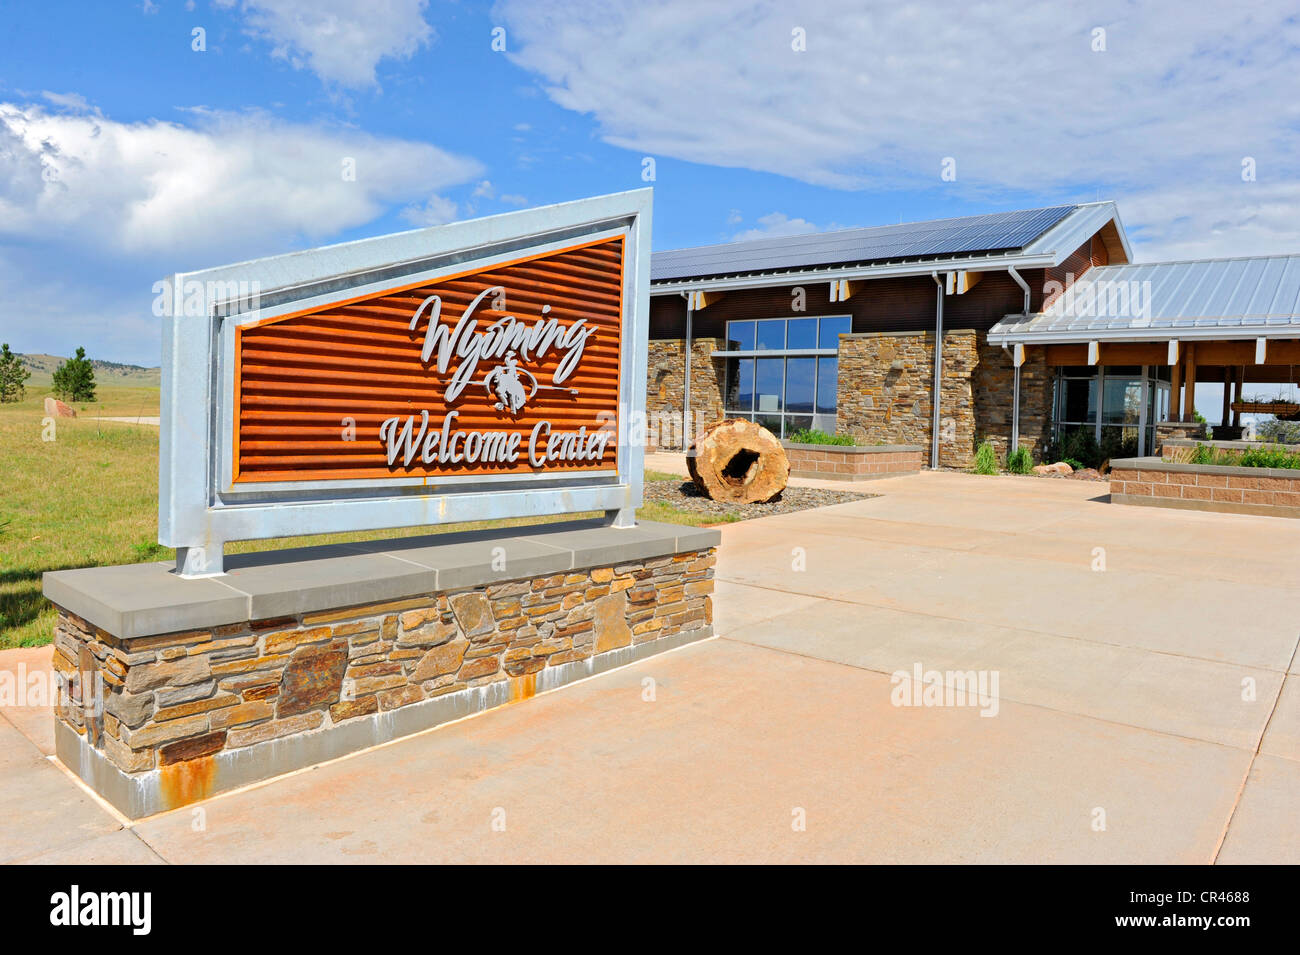 Wyoming Welcome Center uns WY Rest Reiseinformationen zu stoppen Stockfoto